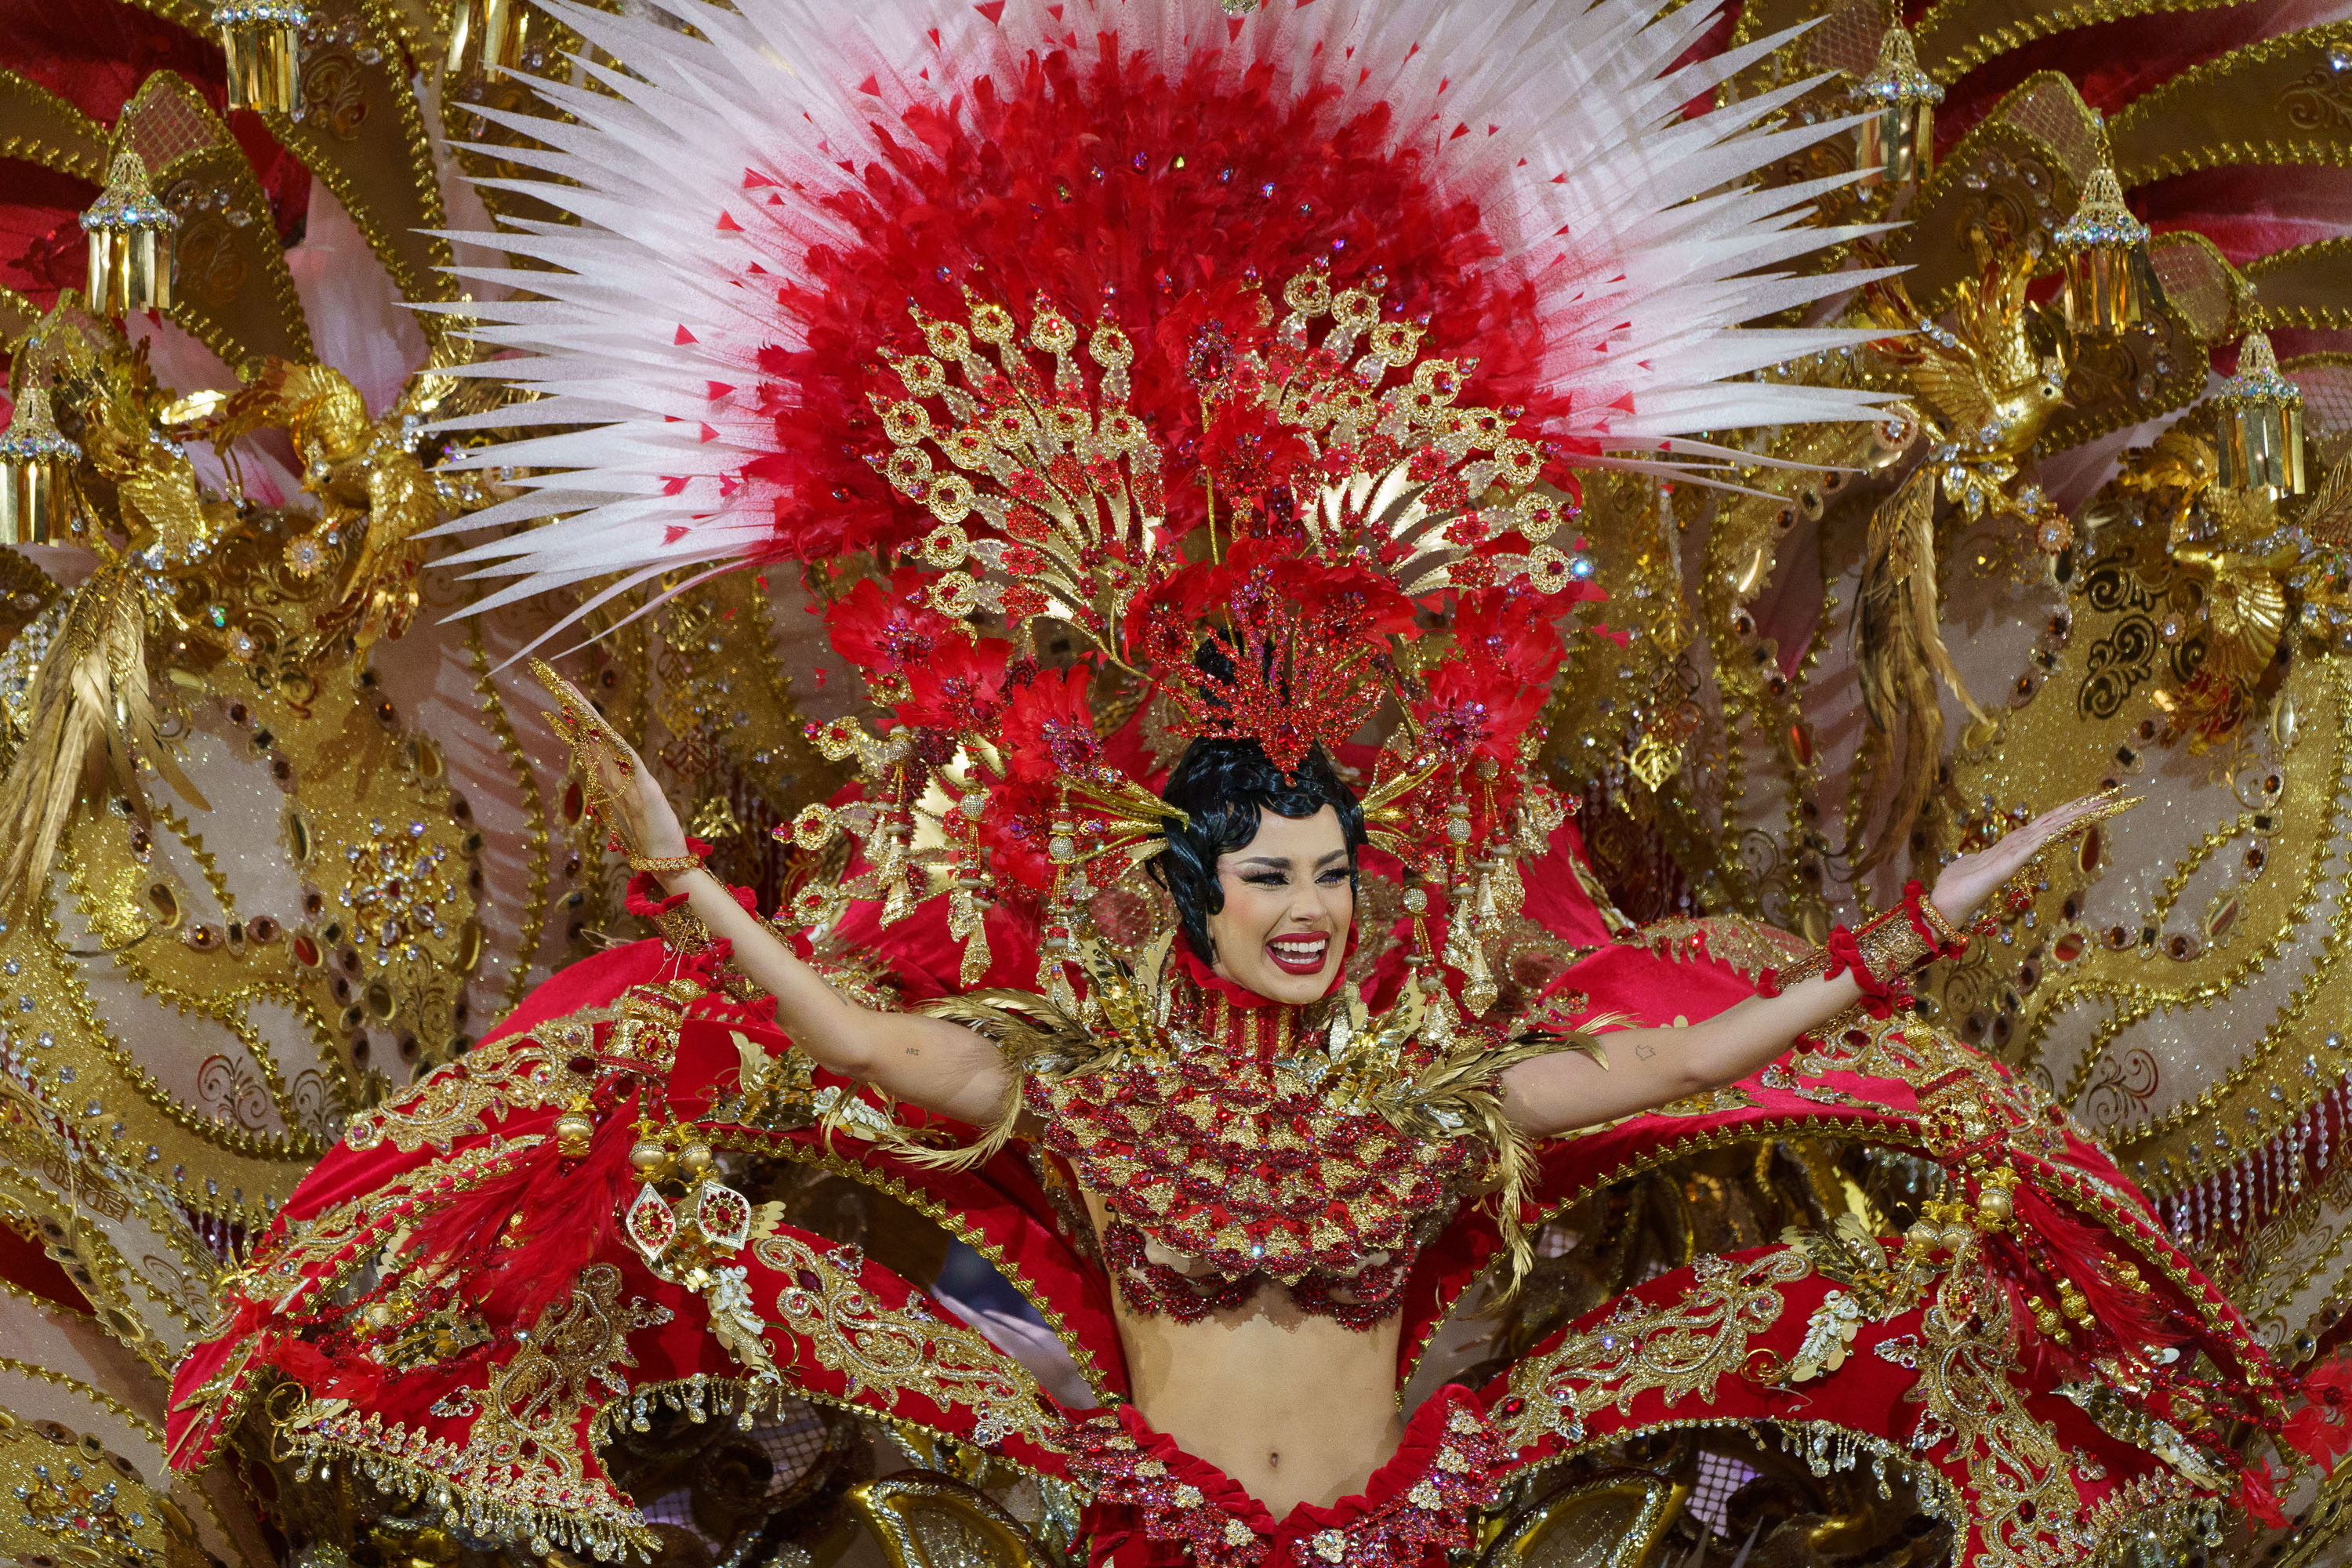 Santa Cruz de Tenerife corona a Ruth González  como reina del Carnaval en la primera celebración sin restricciones tras la pandemia